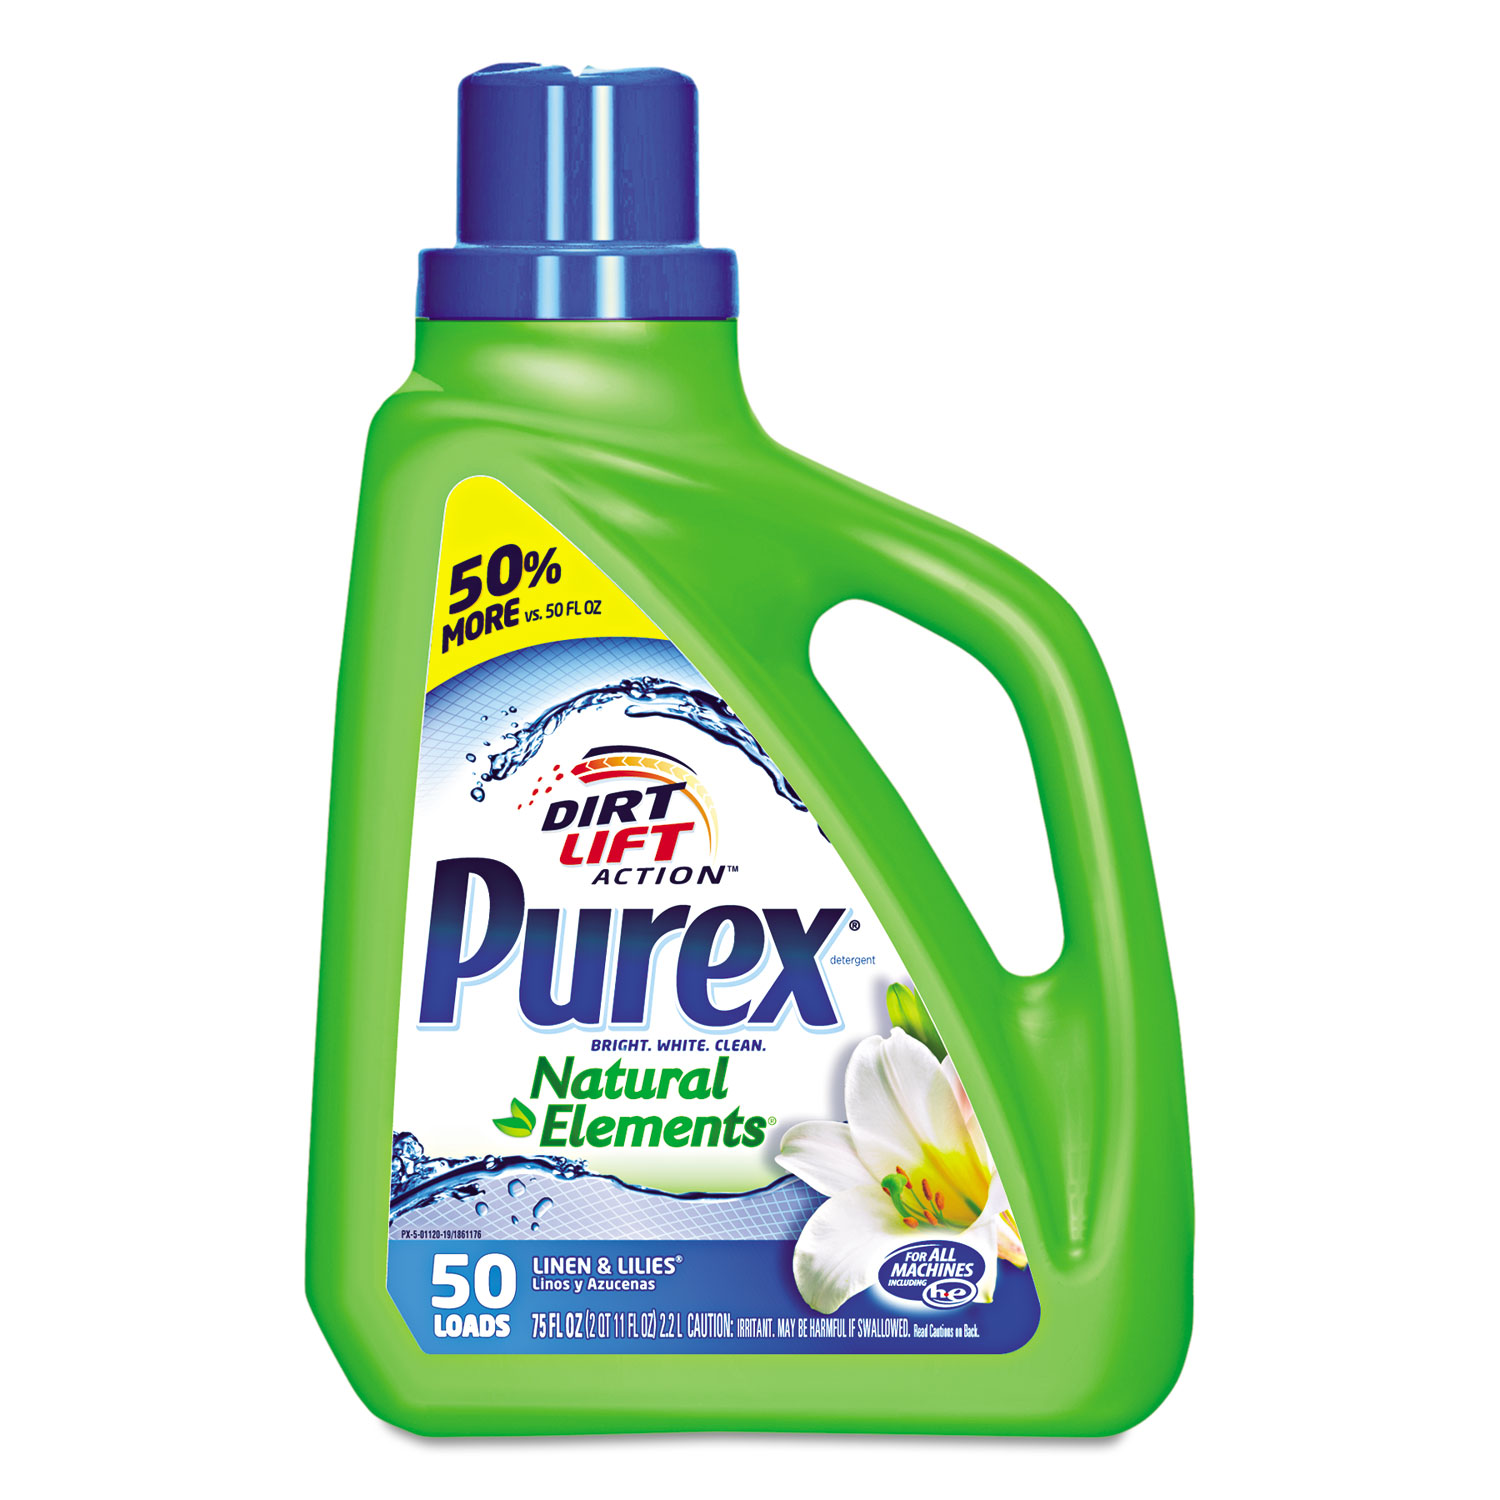  Purex 2420001120 Ultra Natural Elements HE Liquid Detergent, Linen & Lilies, 75 oz Bottle (DIA01120EA) 